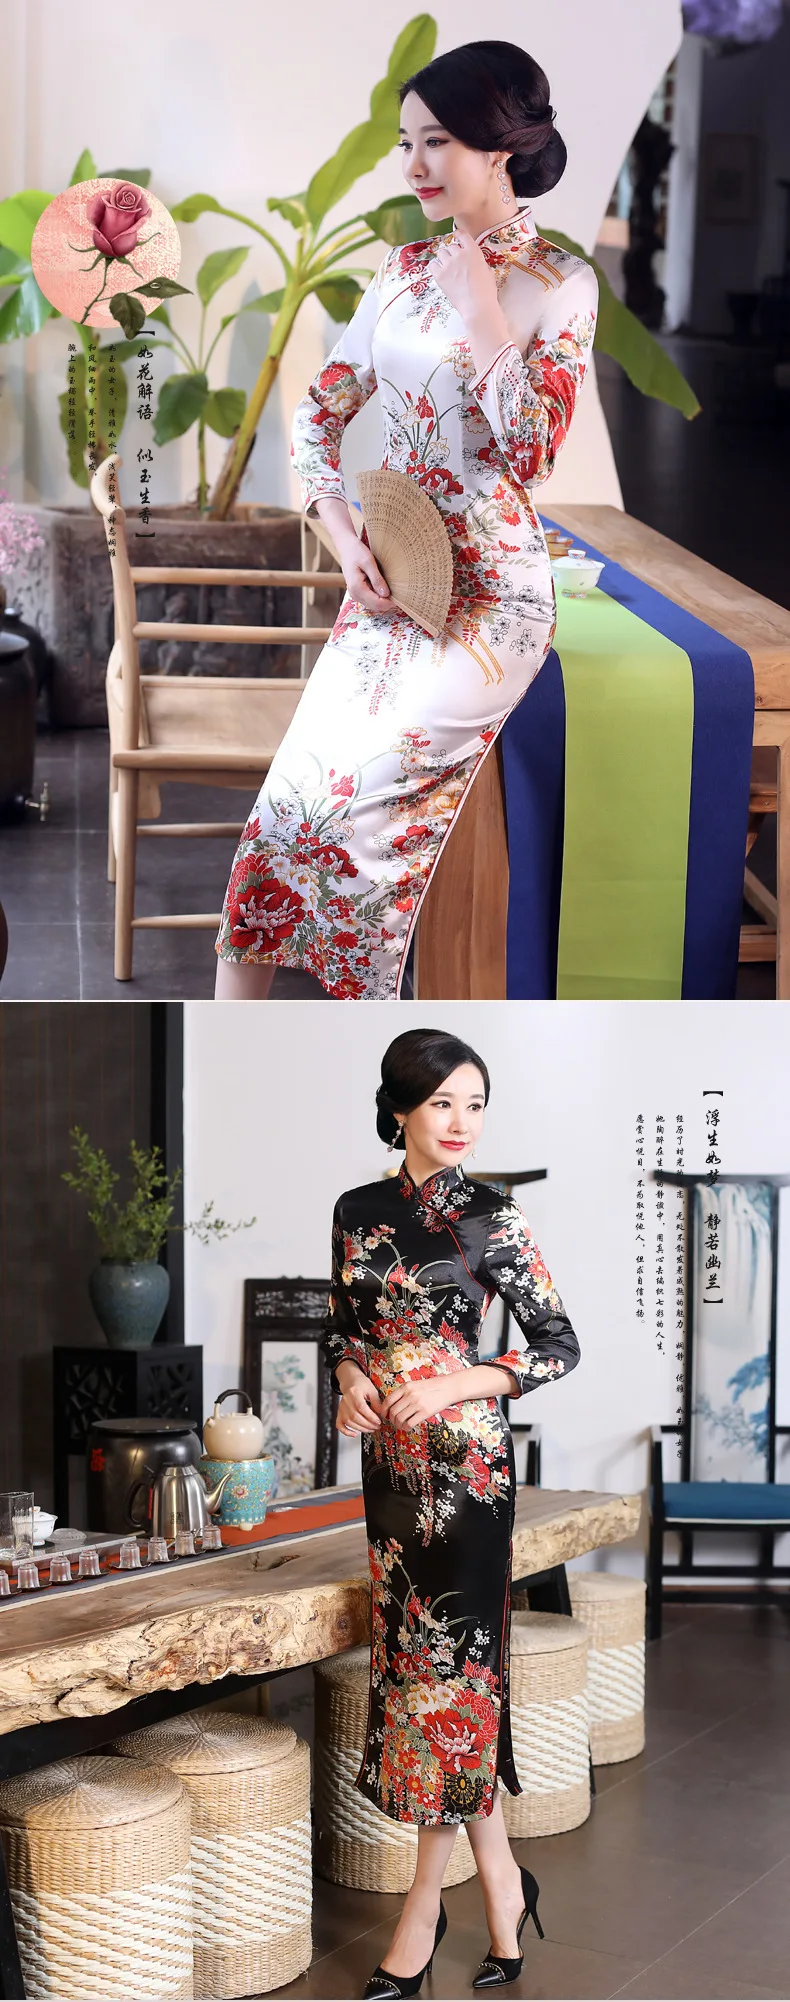 SHENG COCO китайское традиционное платье Cheongsam Qipao с длинным рукавом женское темно-синее длинное вечернее Ципао Drees размера плюс 6XL